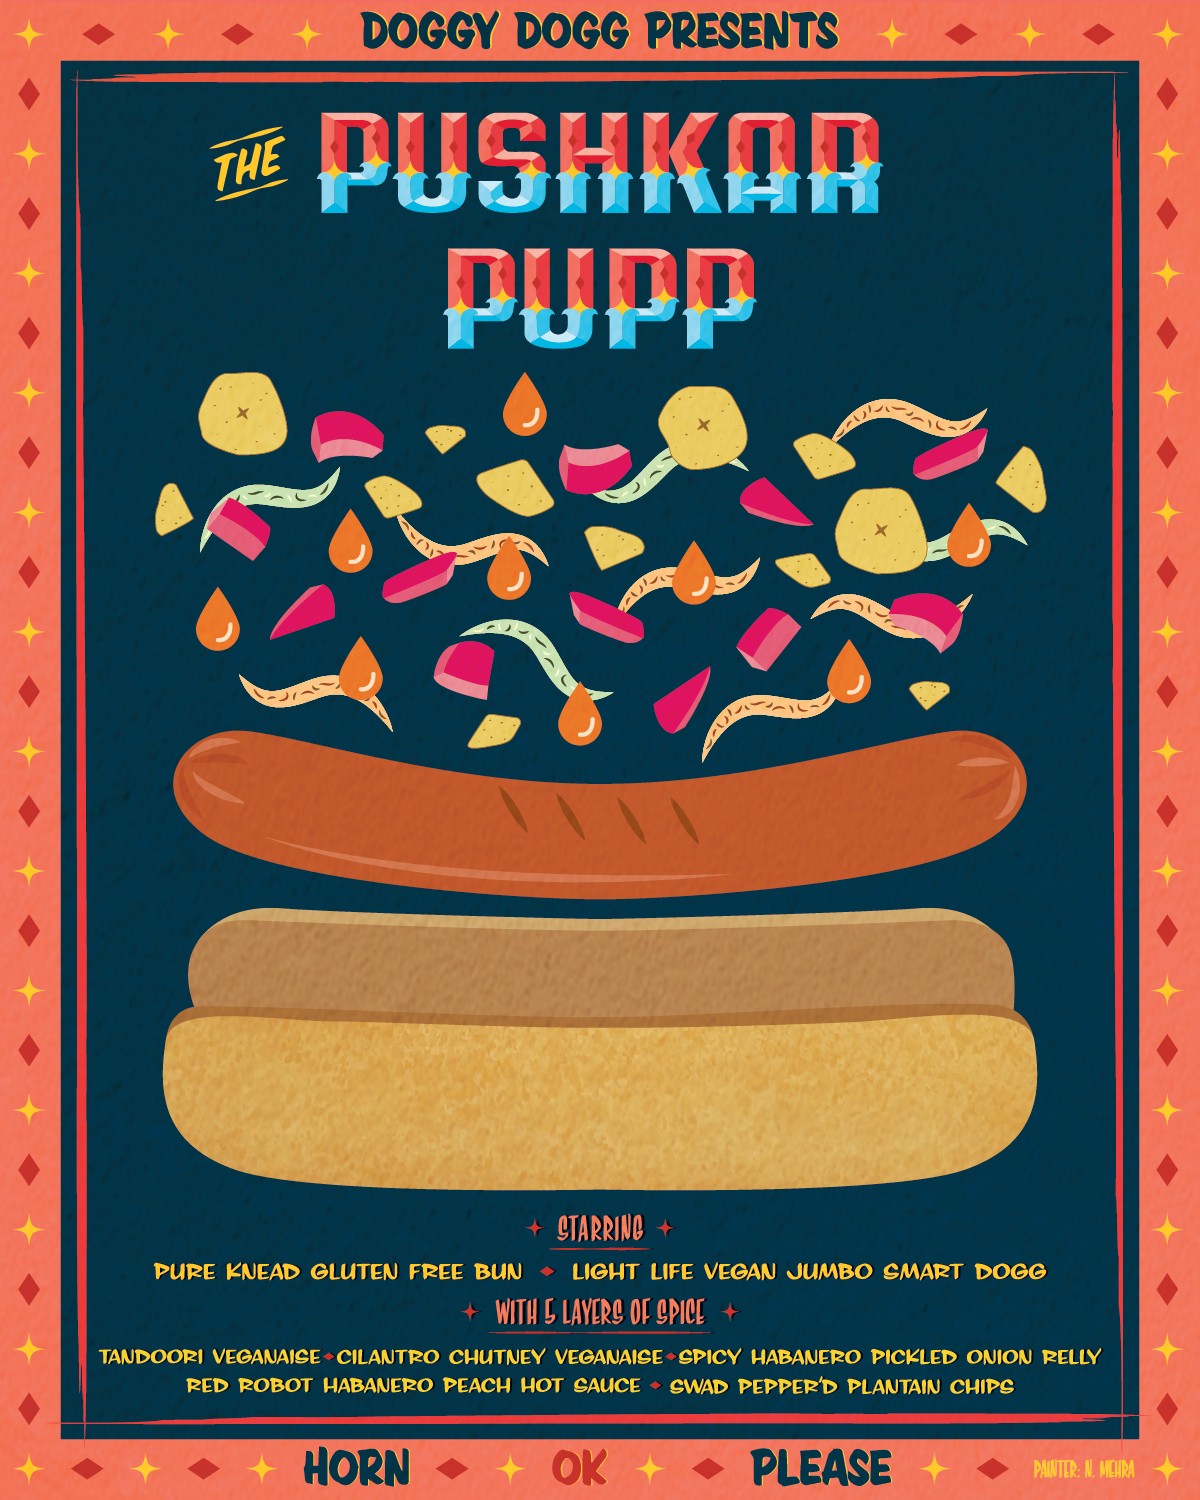 Pushkar_Pupp.png